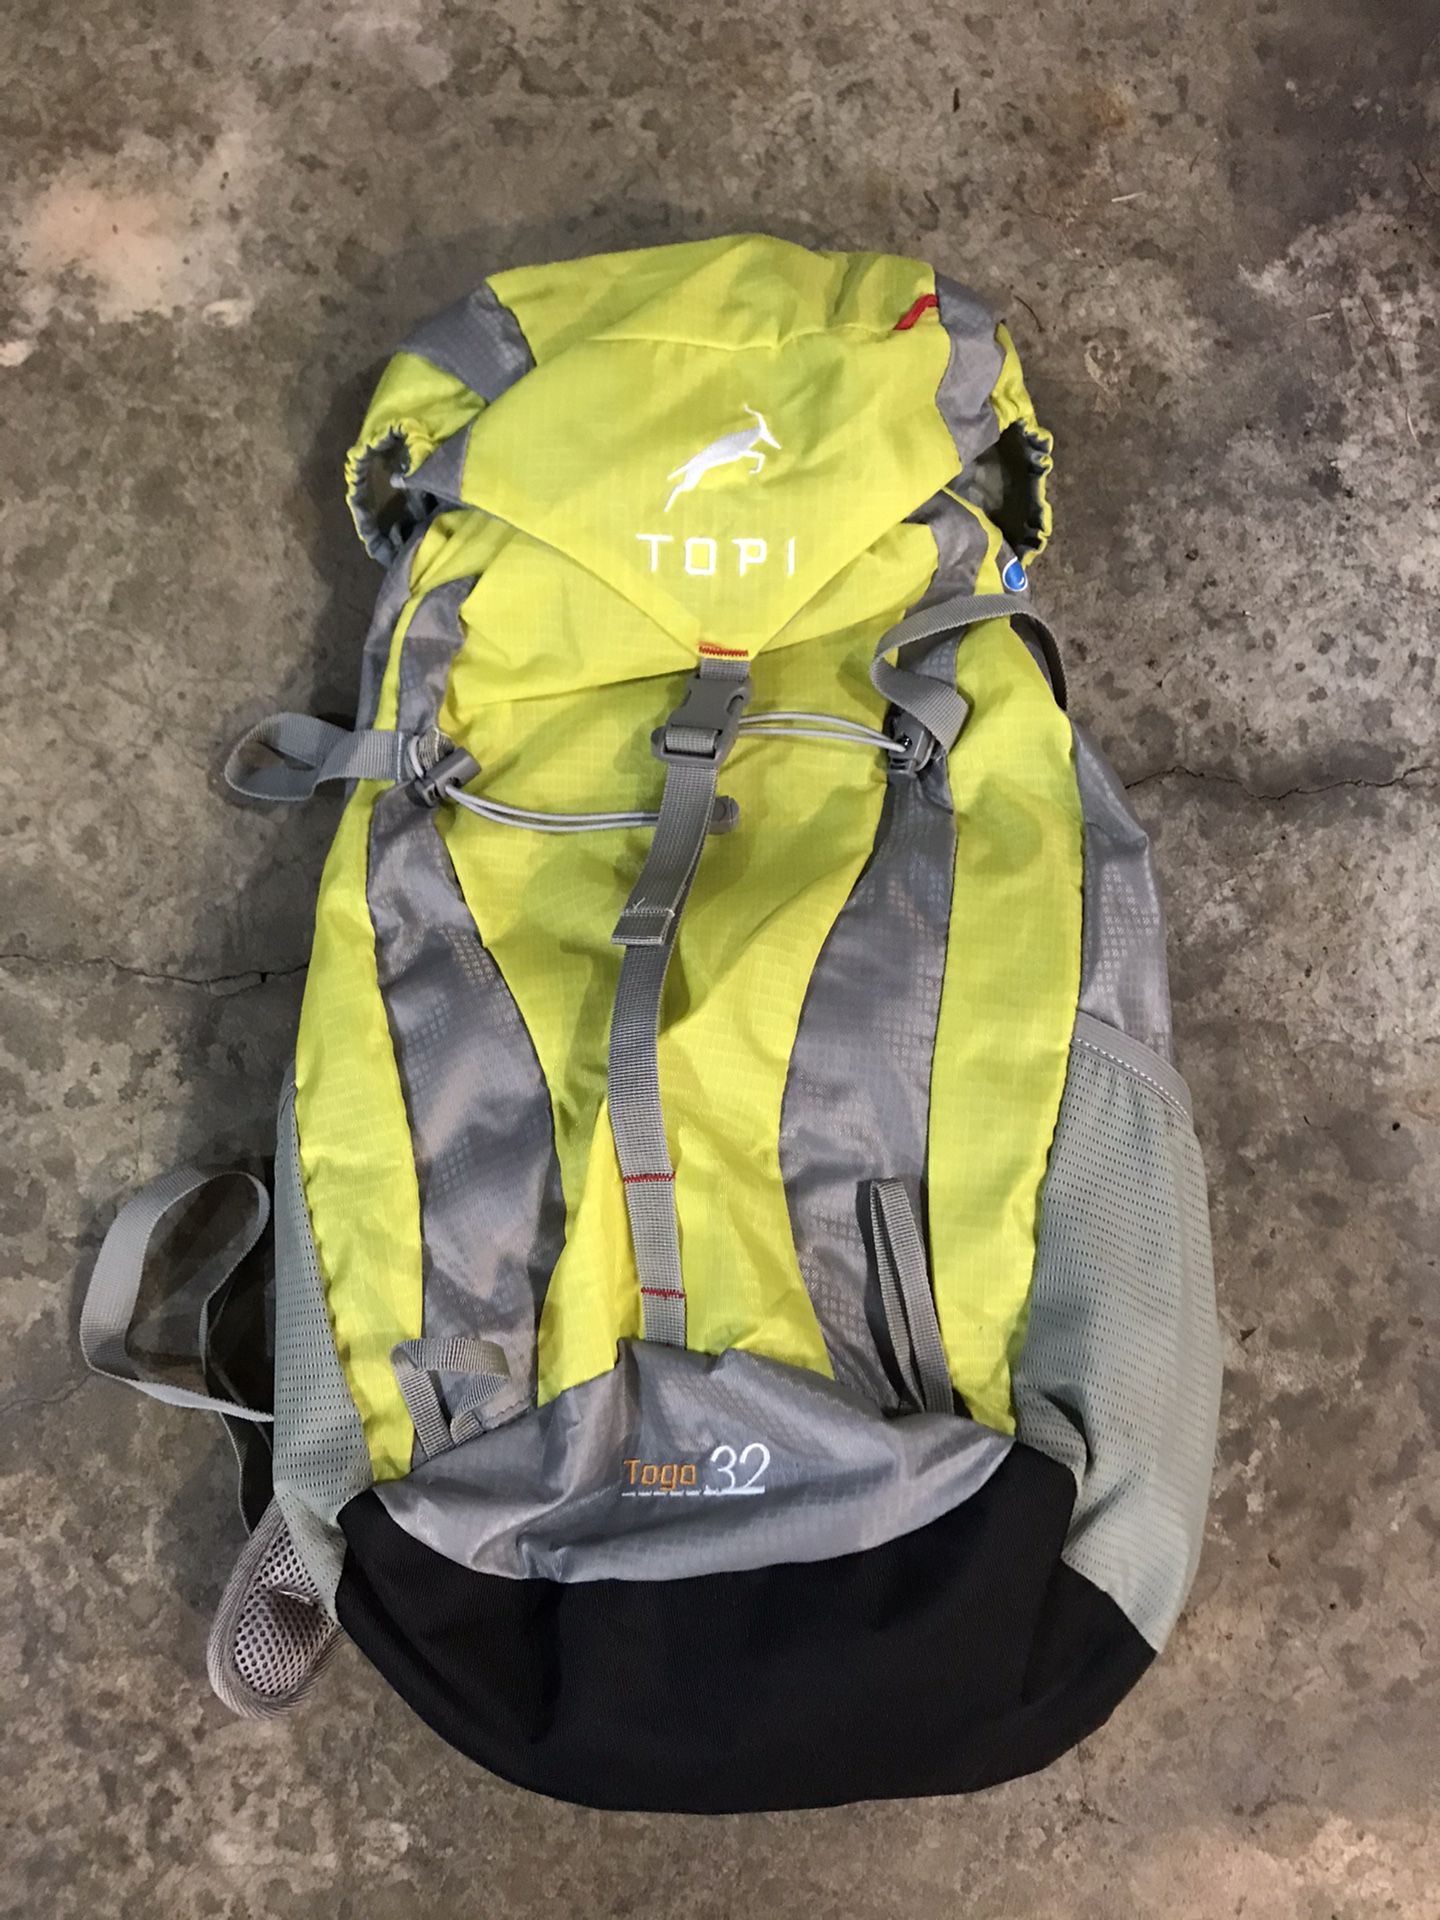 Topi Togo 32 Hiking Backpack NEW